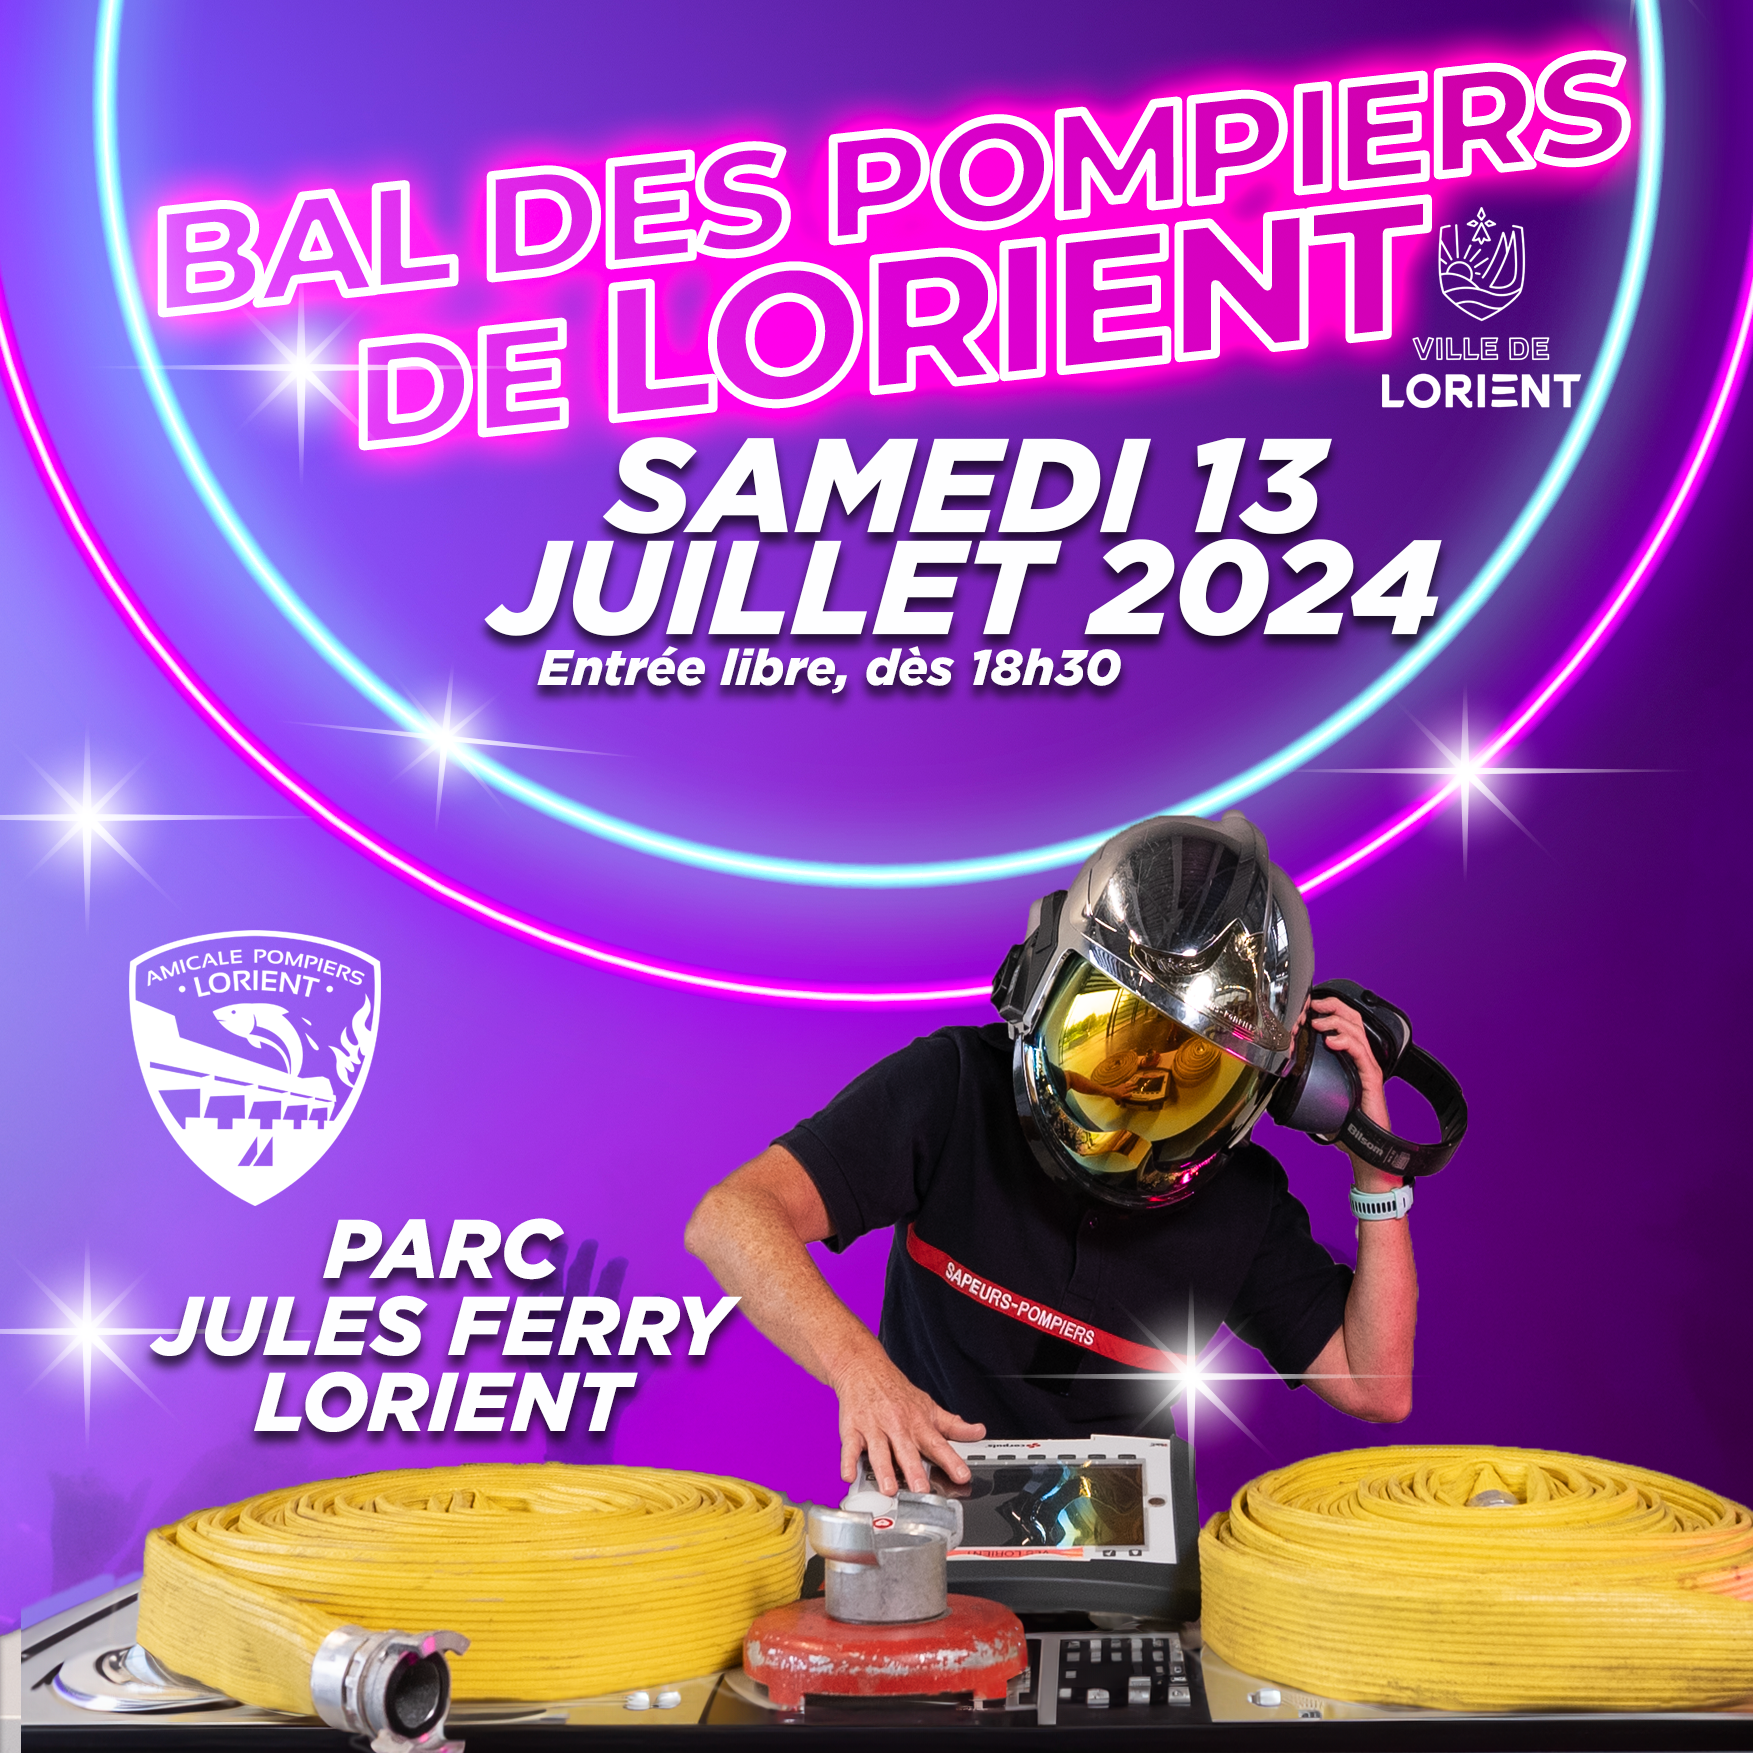 Bal des Pompiers de Lorient 2024, RDV le 13 juillet